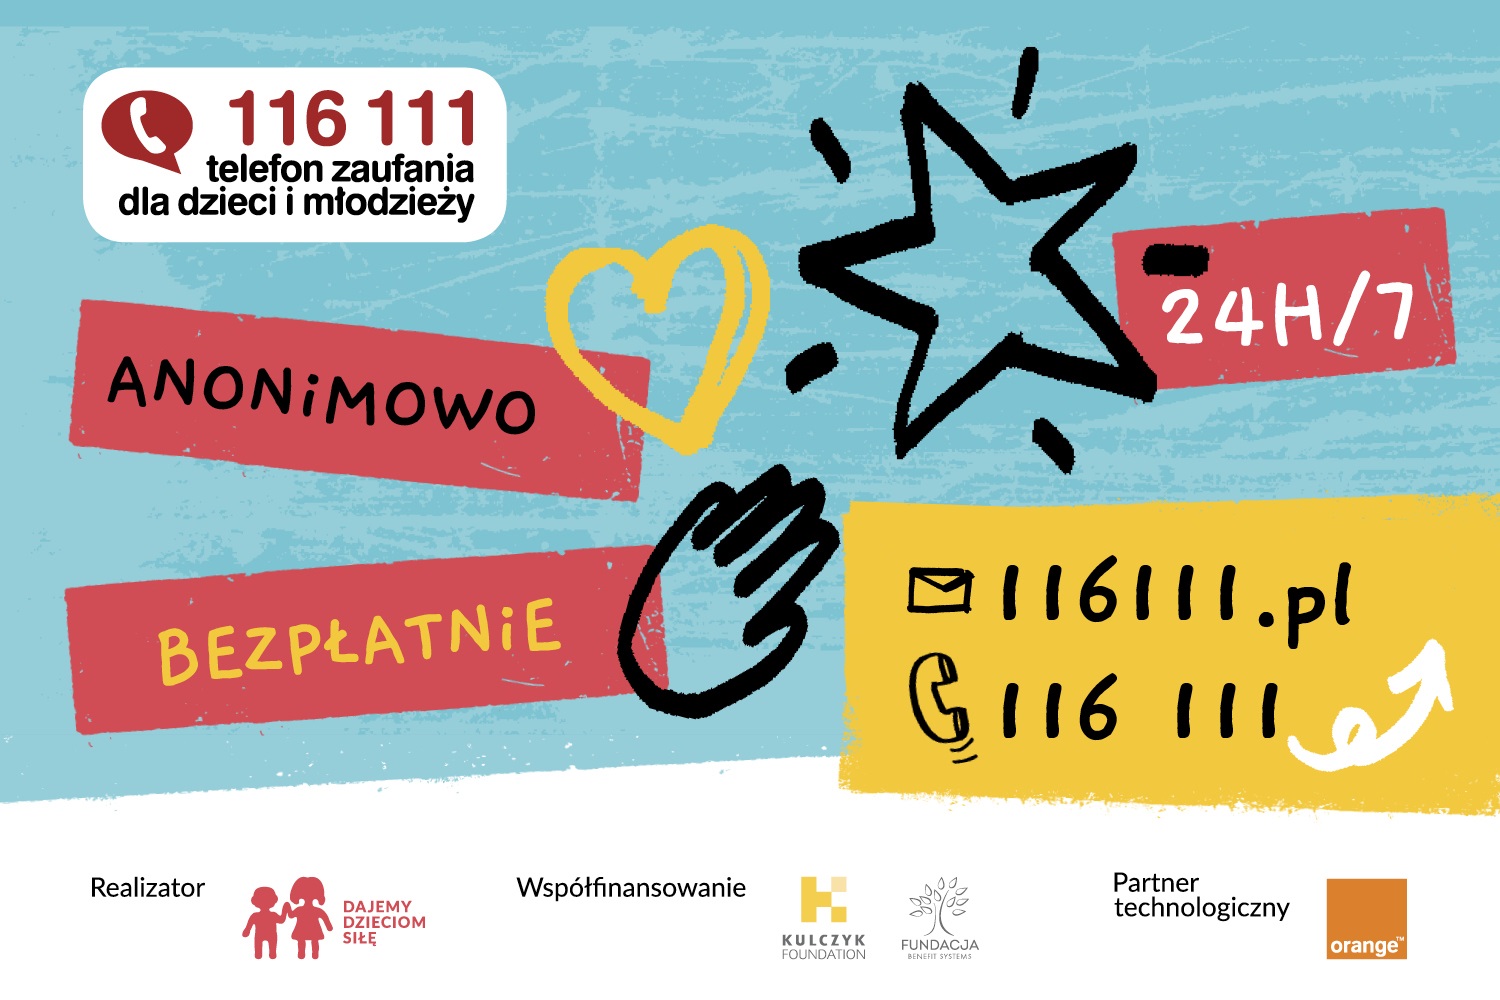 http://media.fdds.pl/ Plakat promujący telefon zaufania dla dzieci i młodzieży 116 111